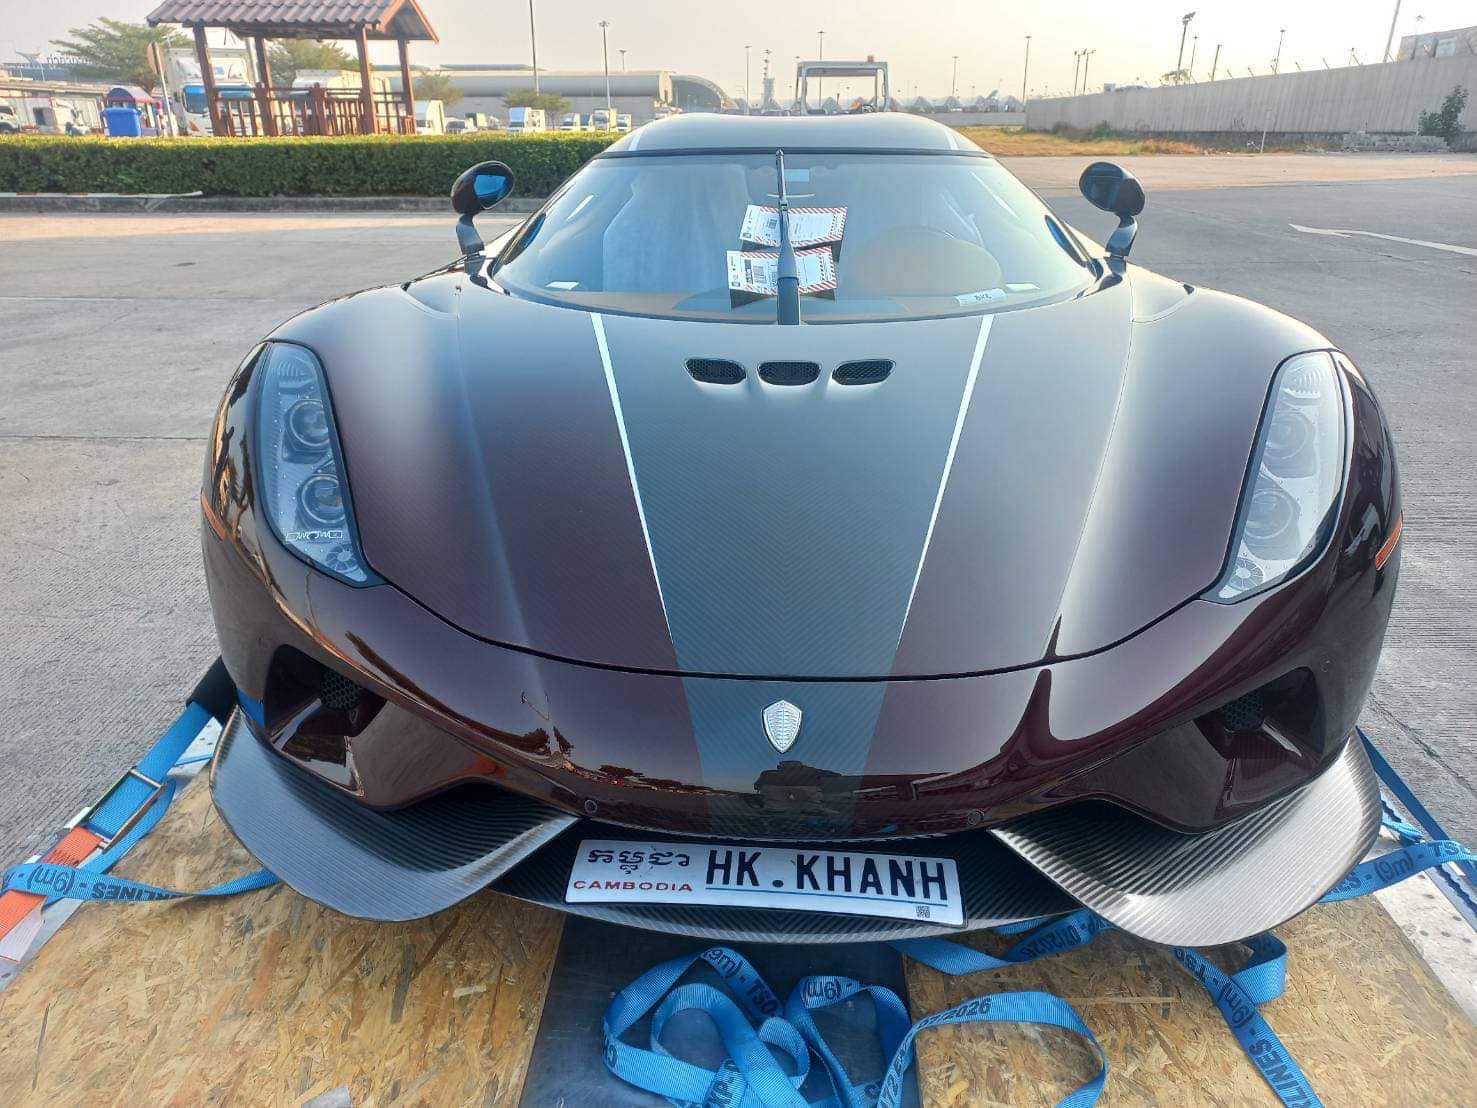 Livestream khoe dàn xe khủng, Hoàng Kim Khánh chia sẻ: Koenigsegg Regera đã về, sẽ sớm đưa tất cả 'xế cưng' đi tour tới Nha Trang- Ảnh 4.